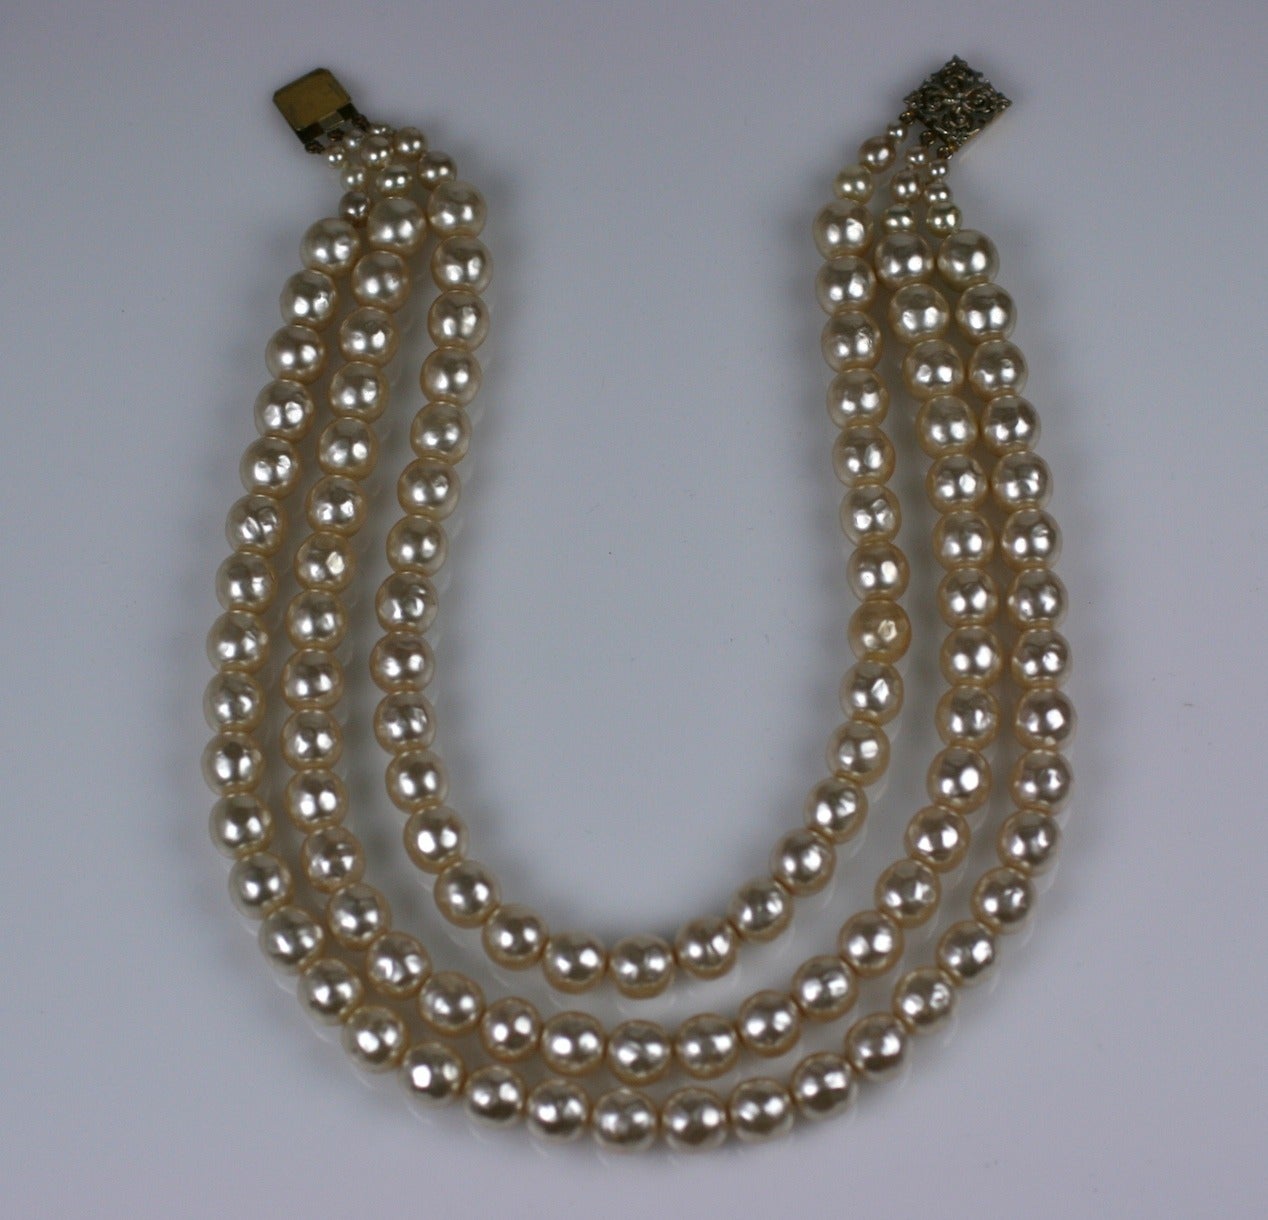 Elegant collier à 3 rangs de perles de verre par Louis Rousselet. Des perles baroques et joliment graduées de couleur crème qui sont fabriquées à la main dans la tradition française. Fermoir en filigrane doré. Longueur du brin le plus court 16